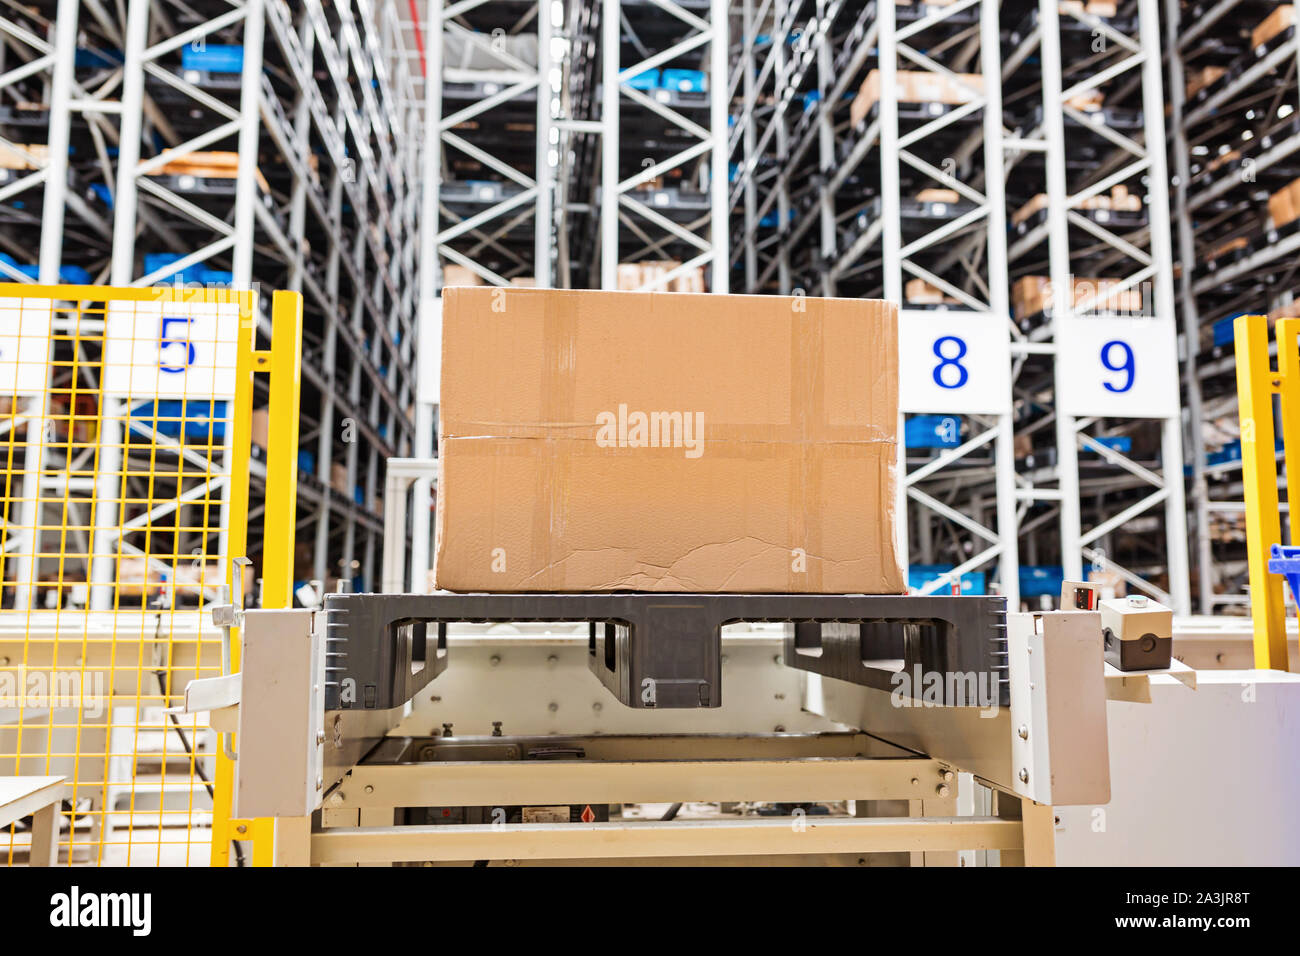 Die Lager voll von Waren, Kisten und Regale um. Industrielle Hintergrund Container Anlagenbau Herstellung Produktion Pappe Stockfoto